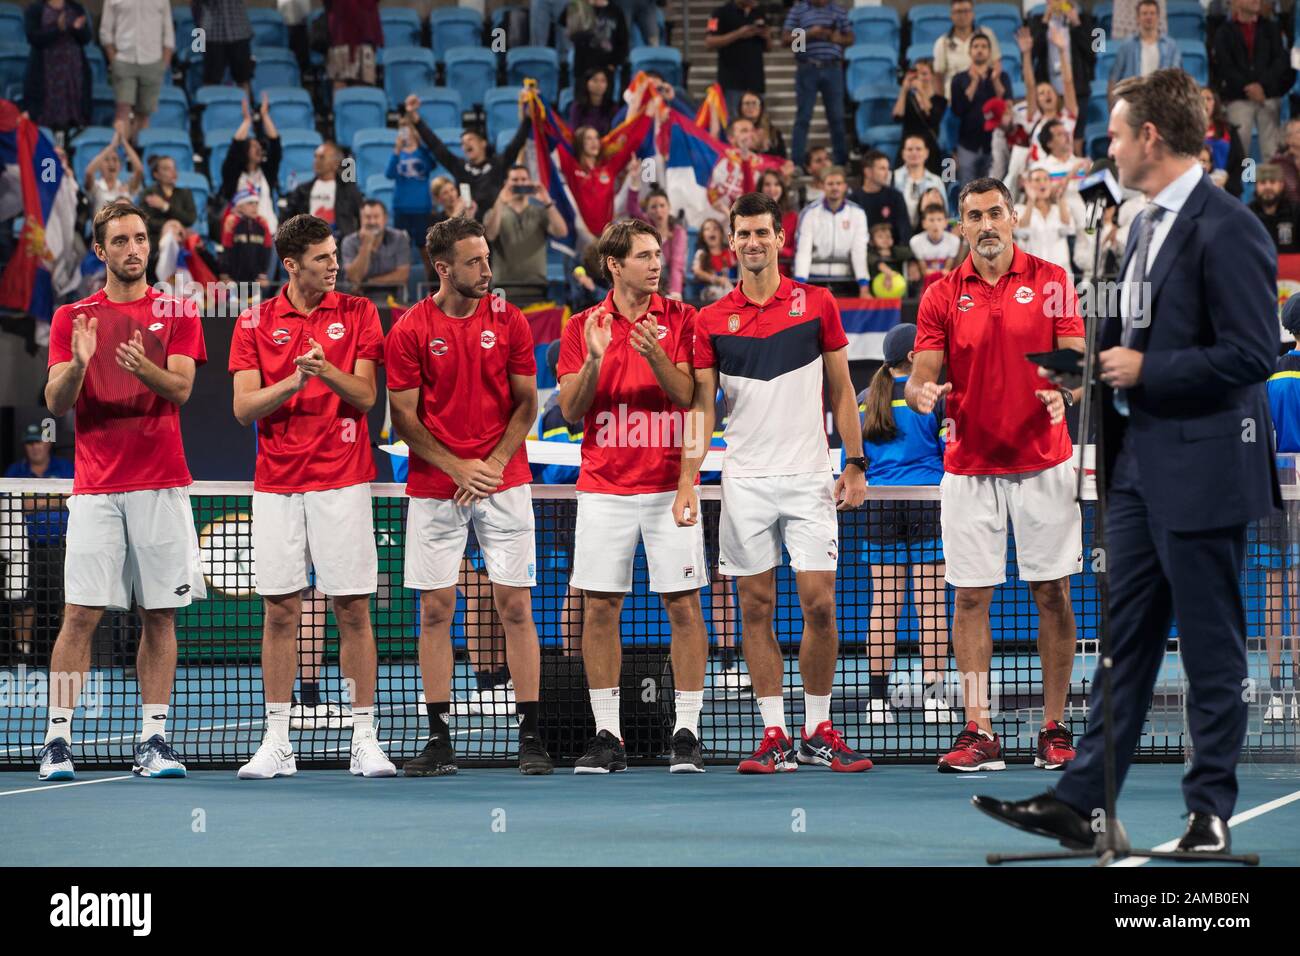 La Serbie célèbre après avoir battu l'Espagne 2-1 lors de la finale de la coupe ATP 2020 à la Ken Rosewall Arena, Sydney, Australie, le 12 janvier 2020. Photo De Peter Dovgan. Banque D'Images